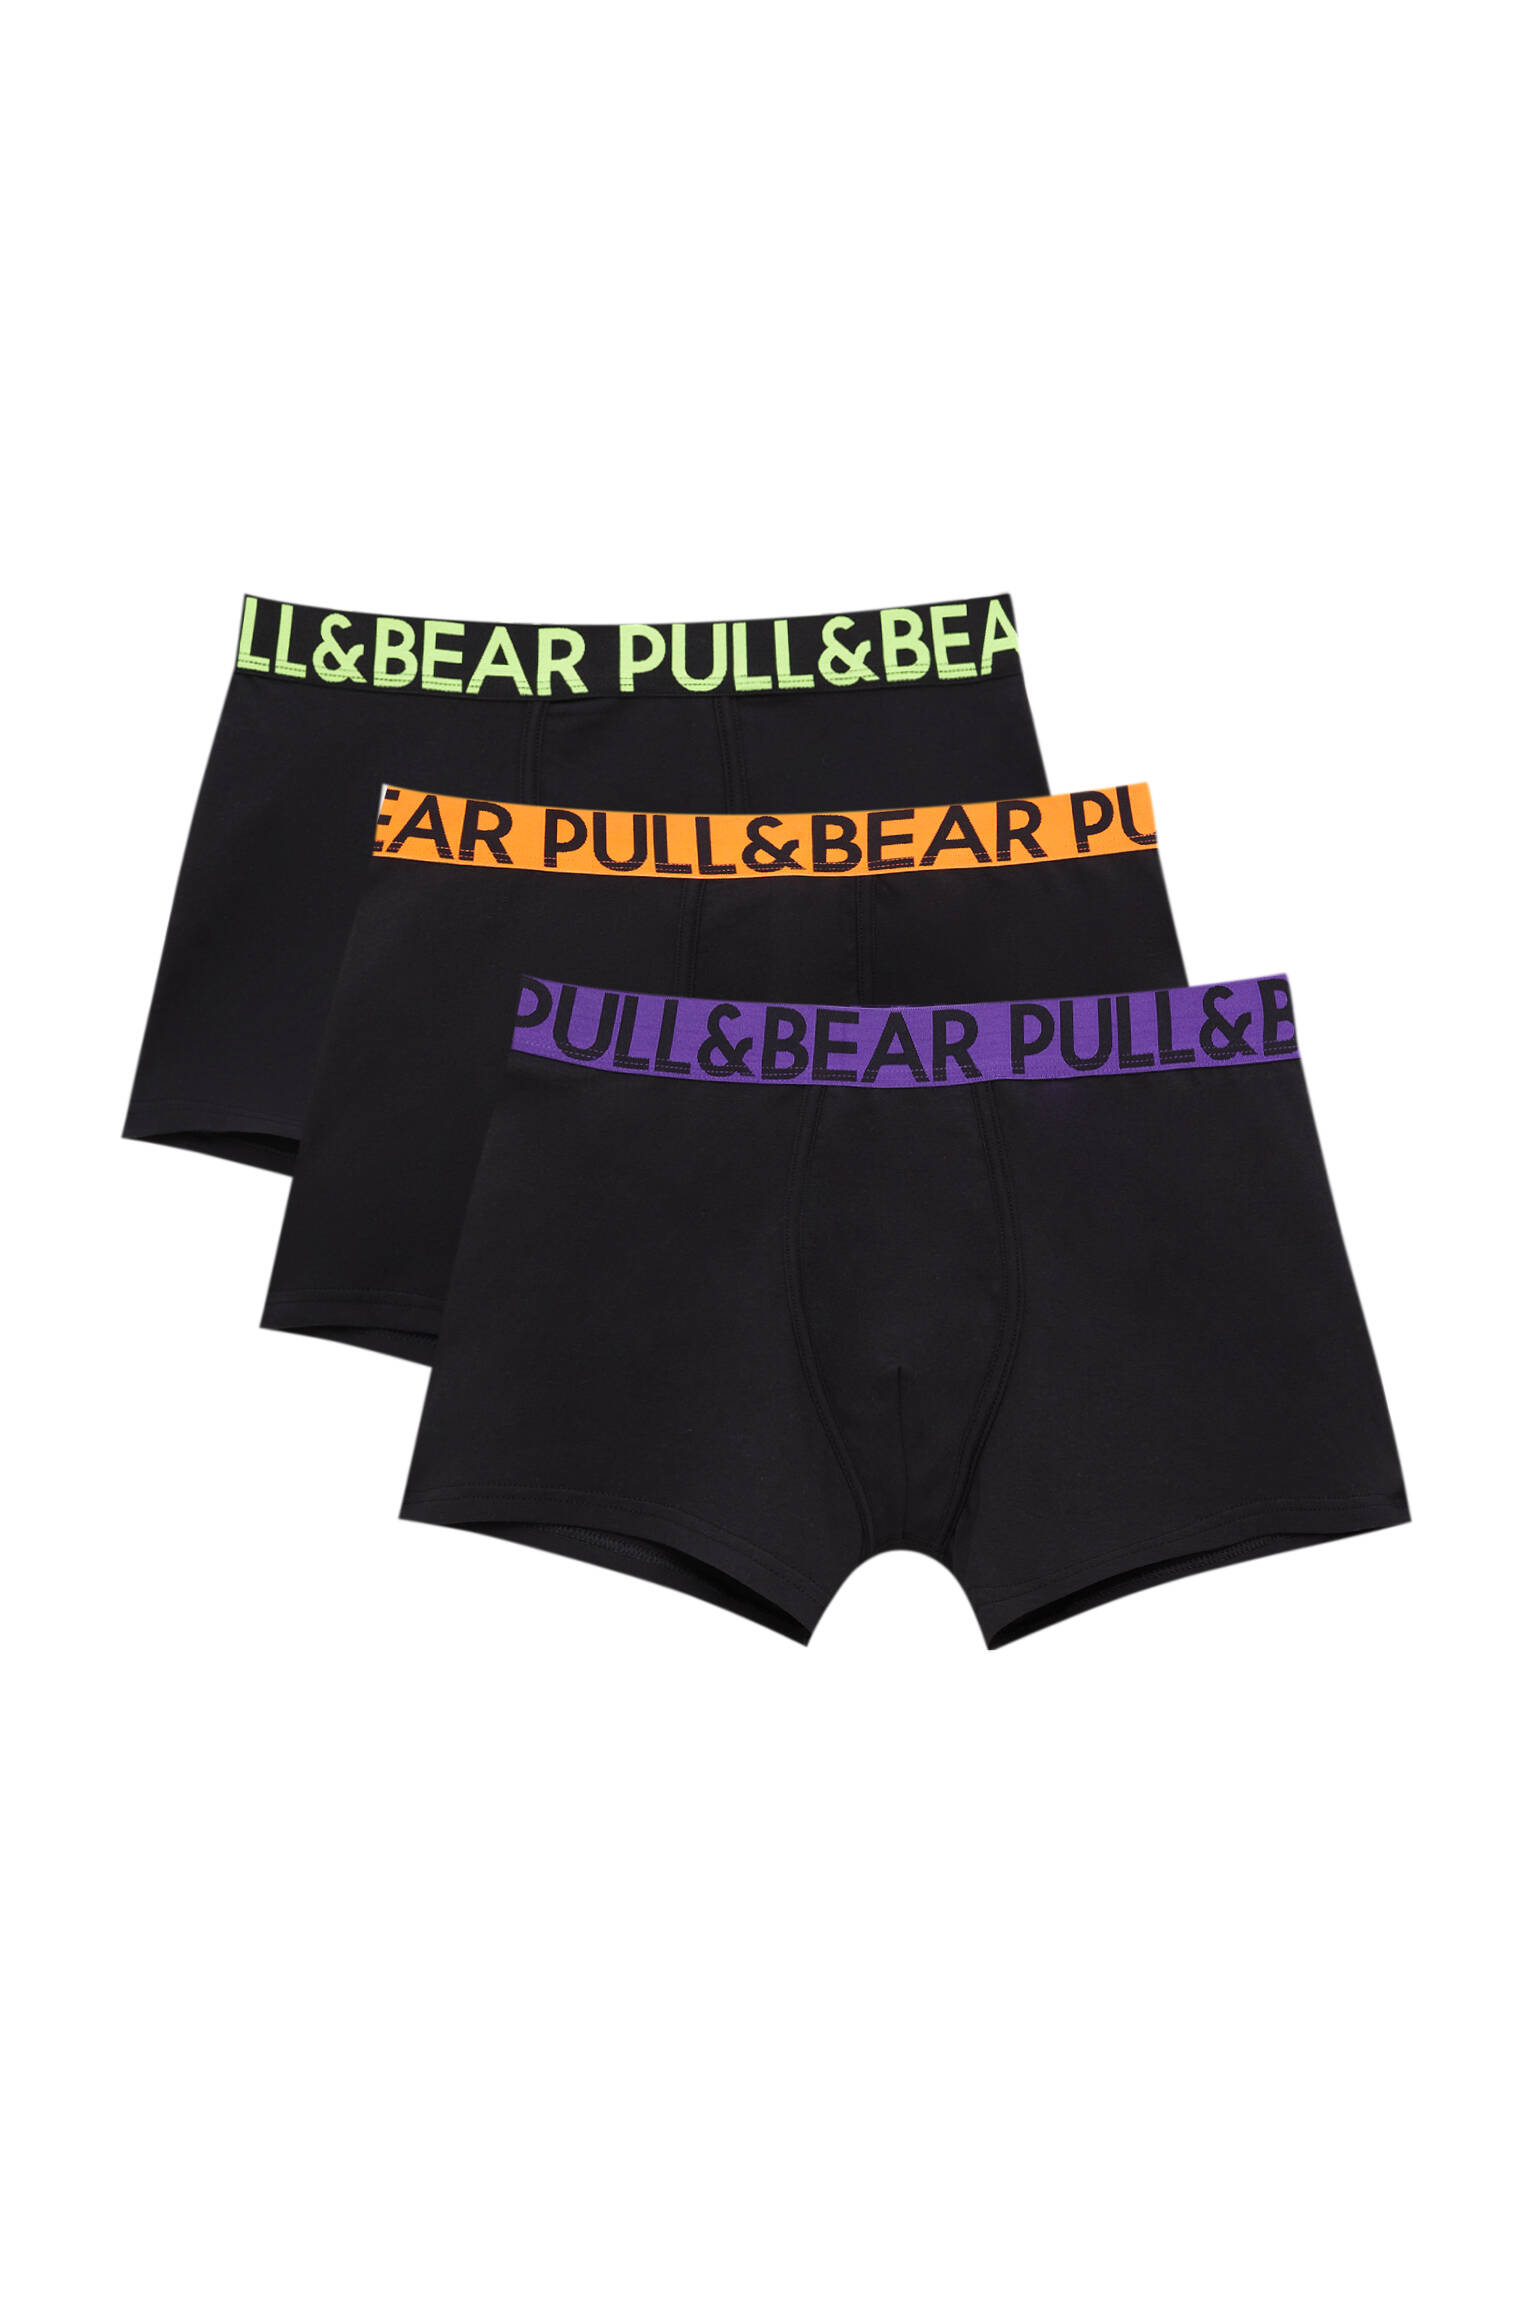 Pull&bear Homme Lot De Trois Boxers Noirs à Taille élastique Dans Des Tons Fluo Et Logo Contrastant. Divers L